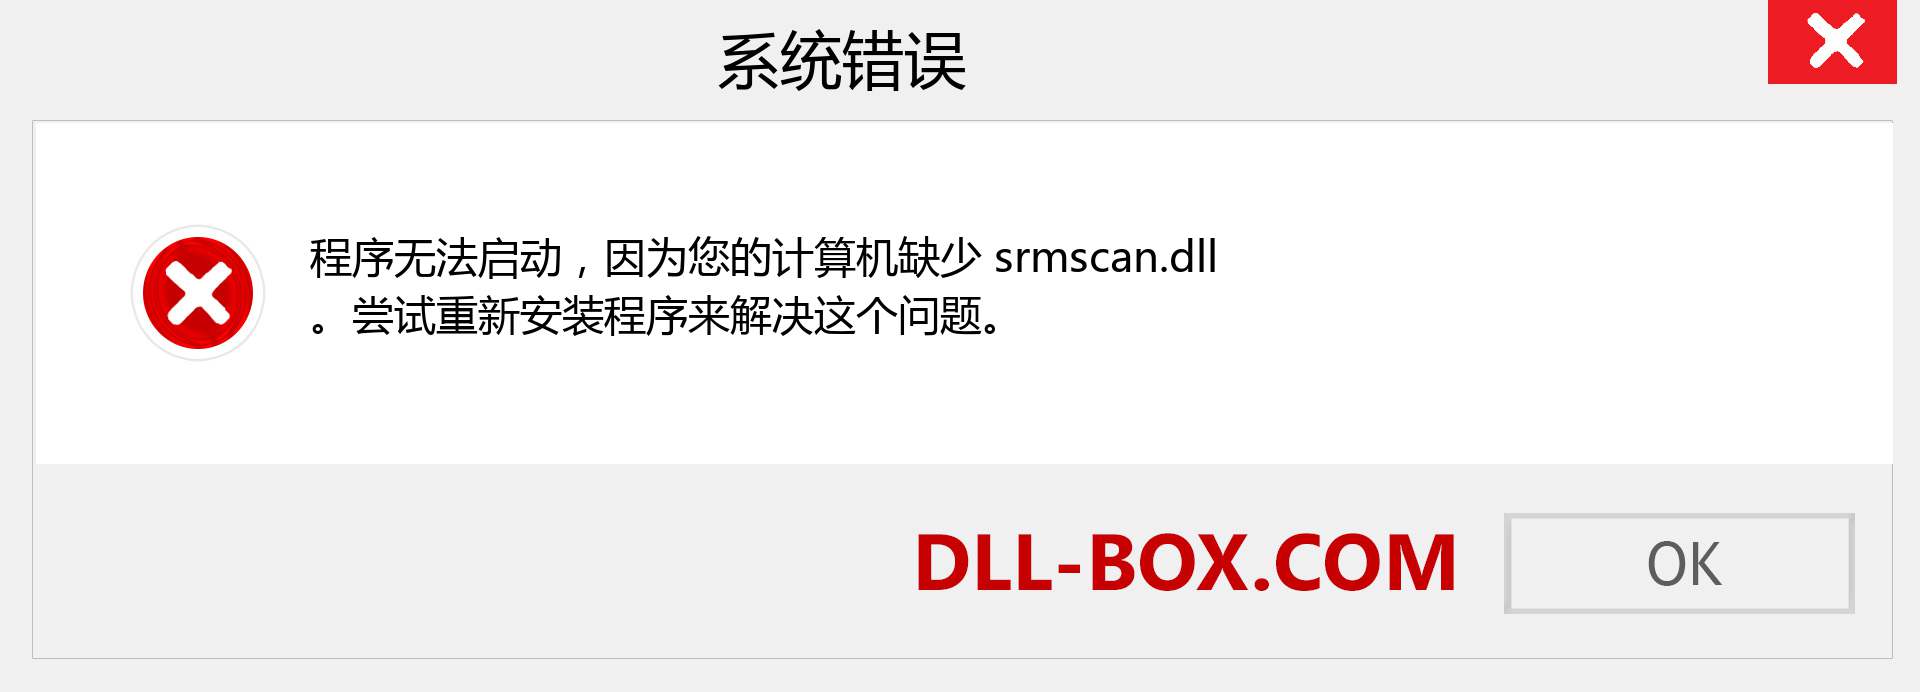 srmscan.dll 文件丢失？。 适用于 Windows 7、8、10 的下载 - 修复 Windows、照片、图像上的 srmscan dll 丢失错误